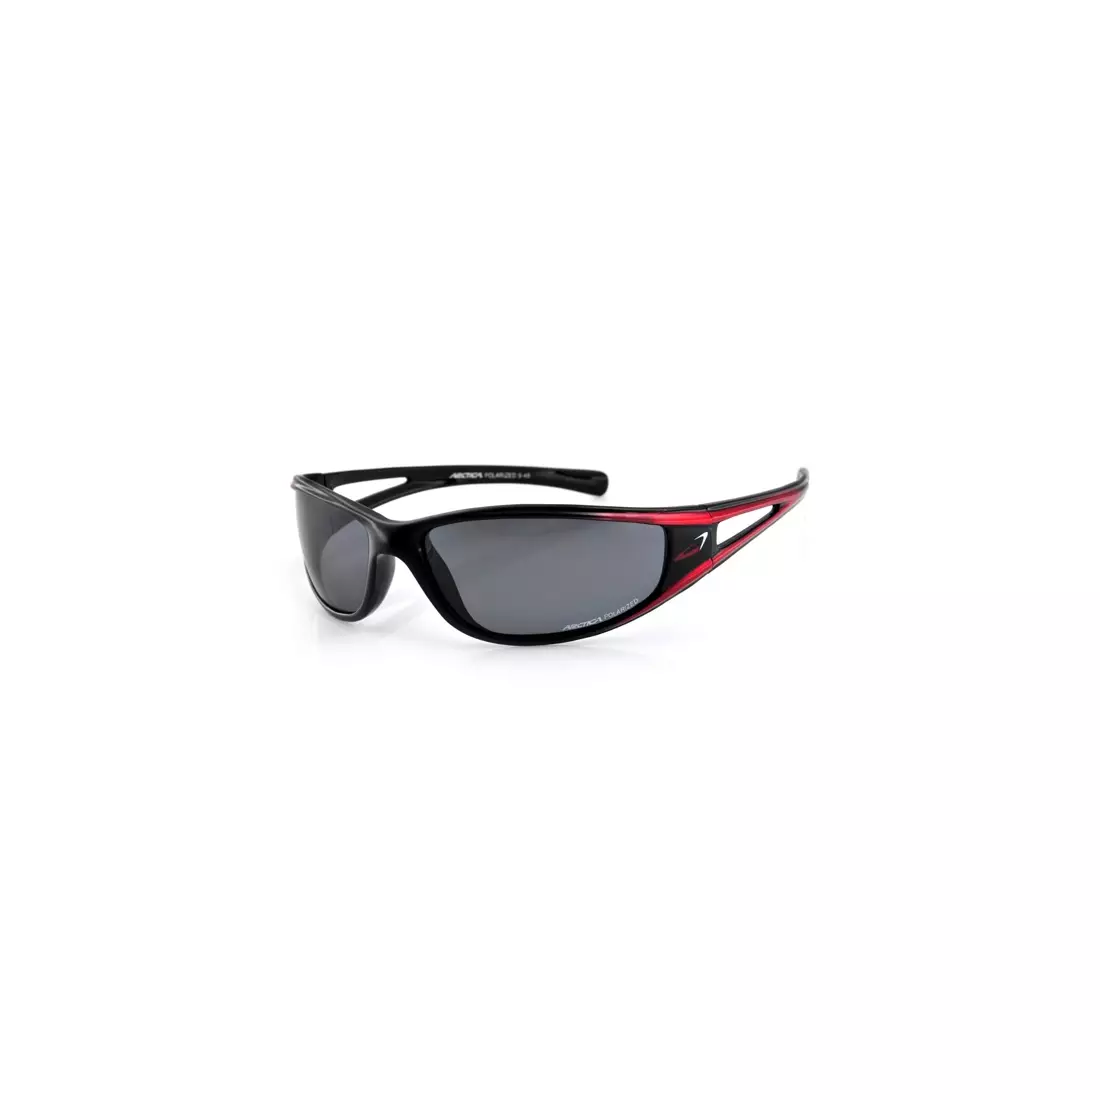 ARCTICA Sportbrille S-49 - Farbe: Schwarz und Rot